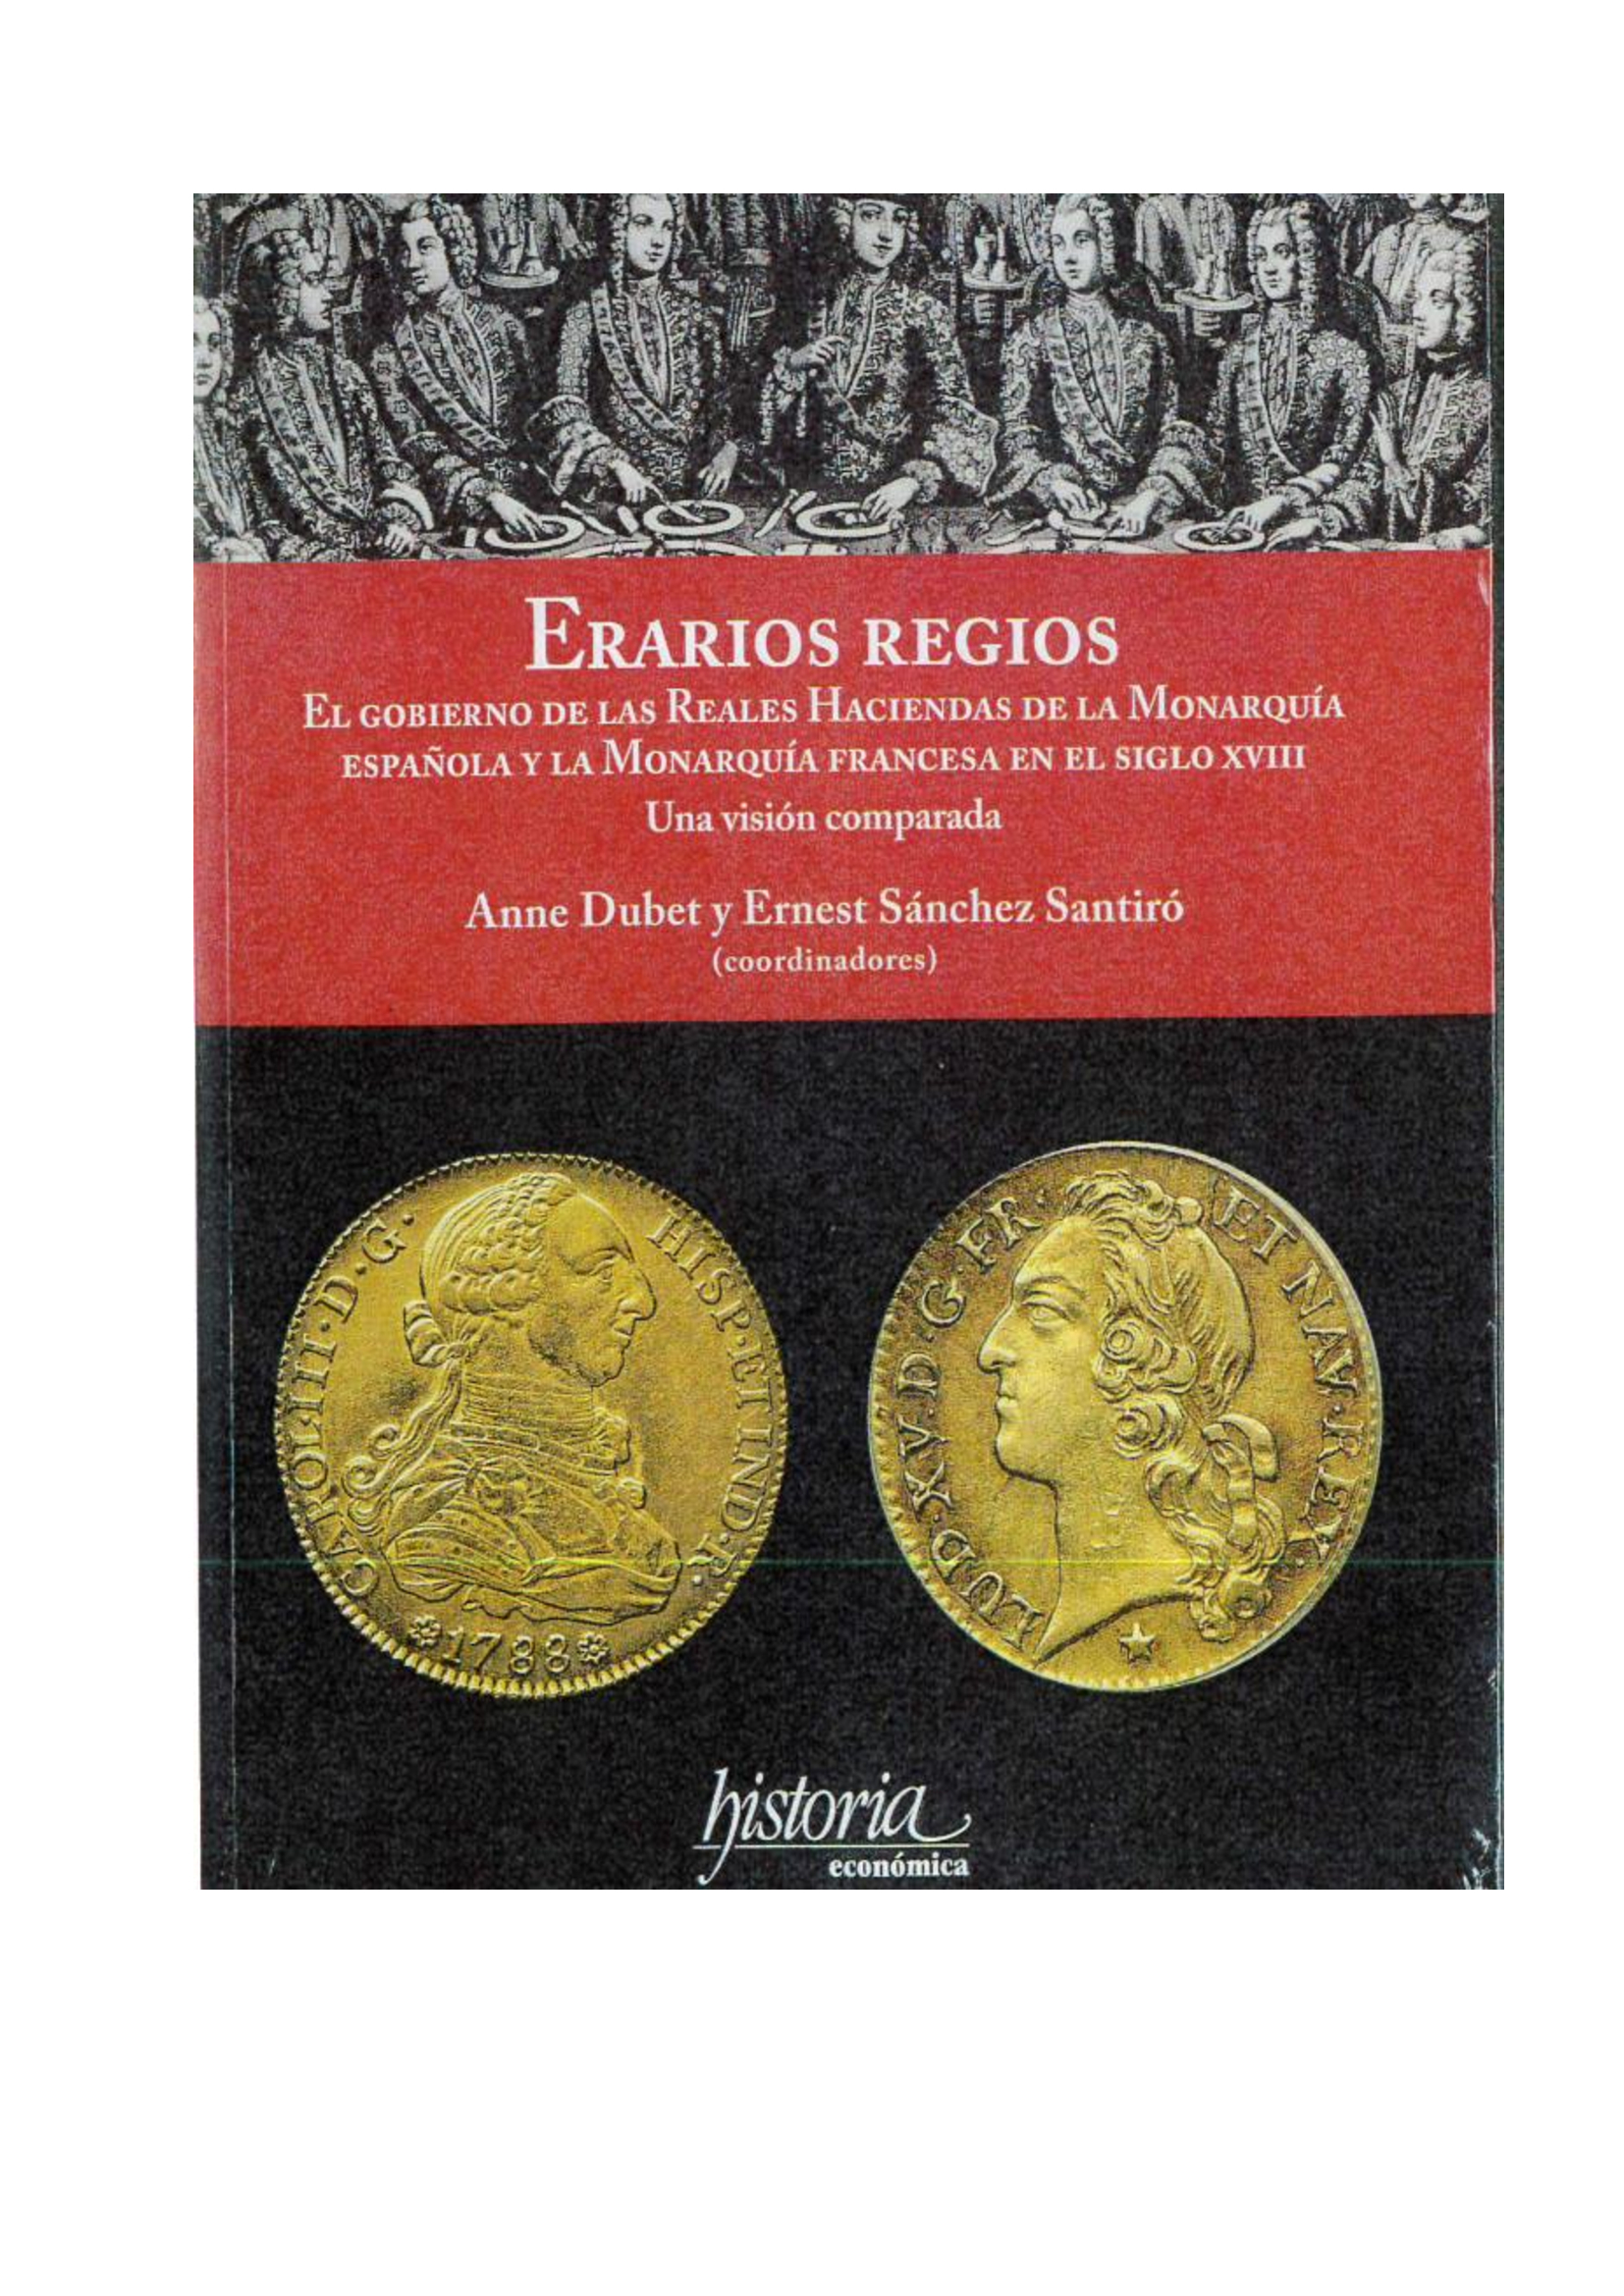 Imagen de portada del libro Erarios regios